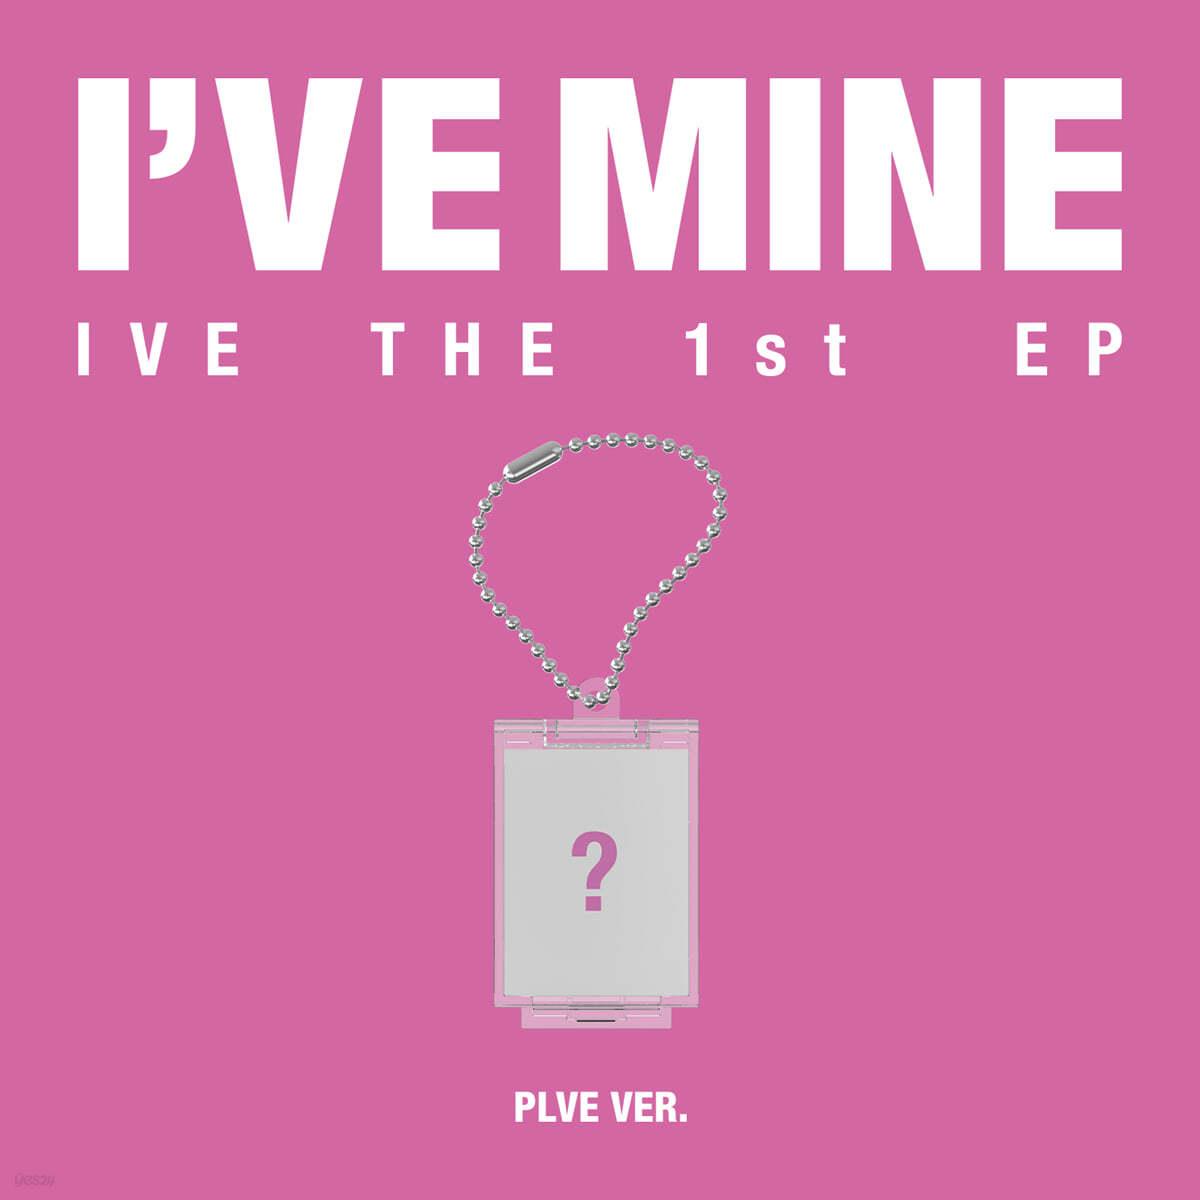 IVE 1st EP – I’VE MINE (PLVE Ver.)